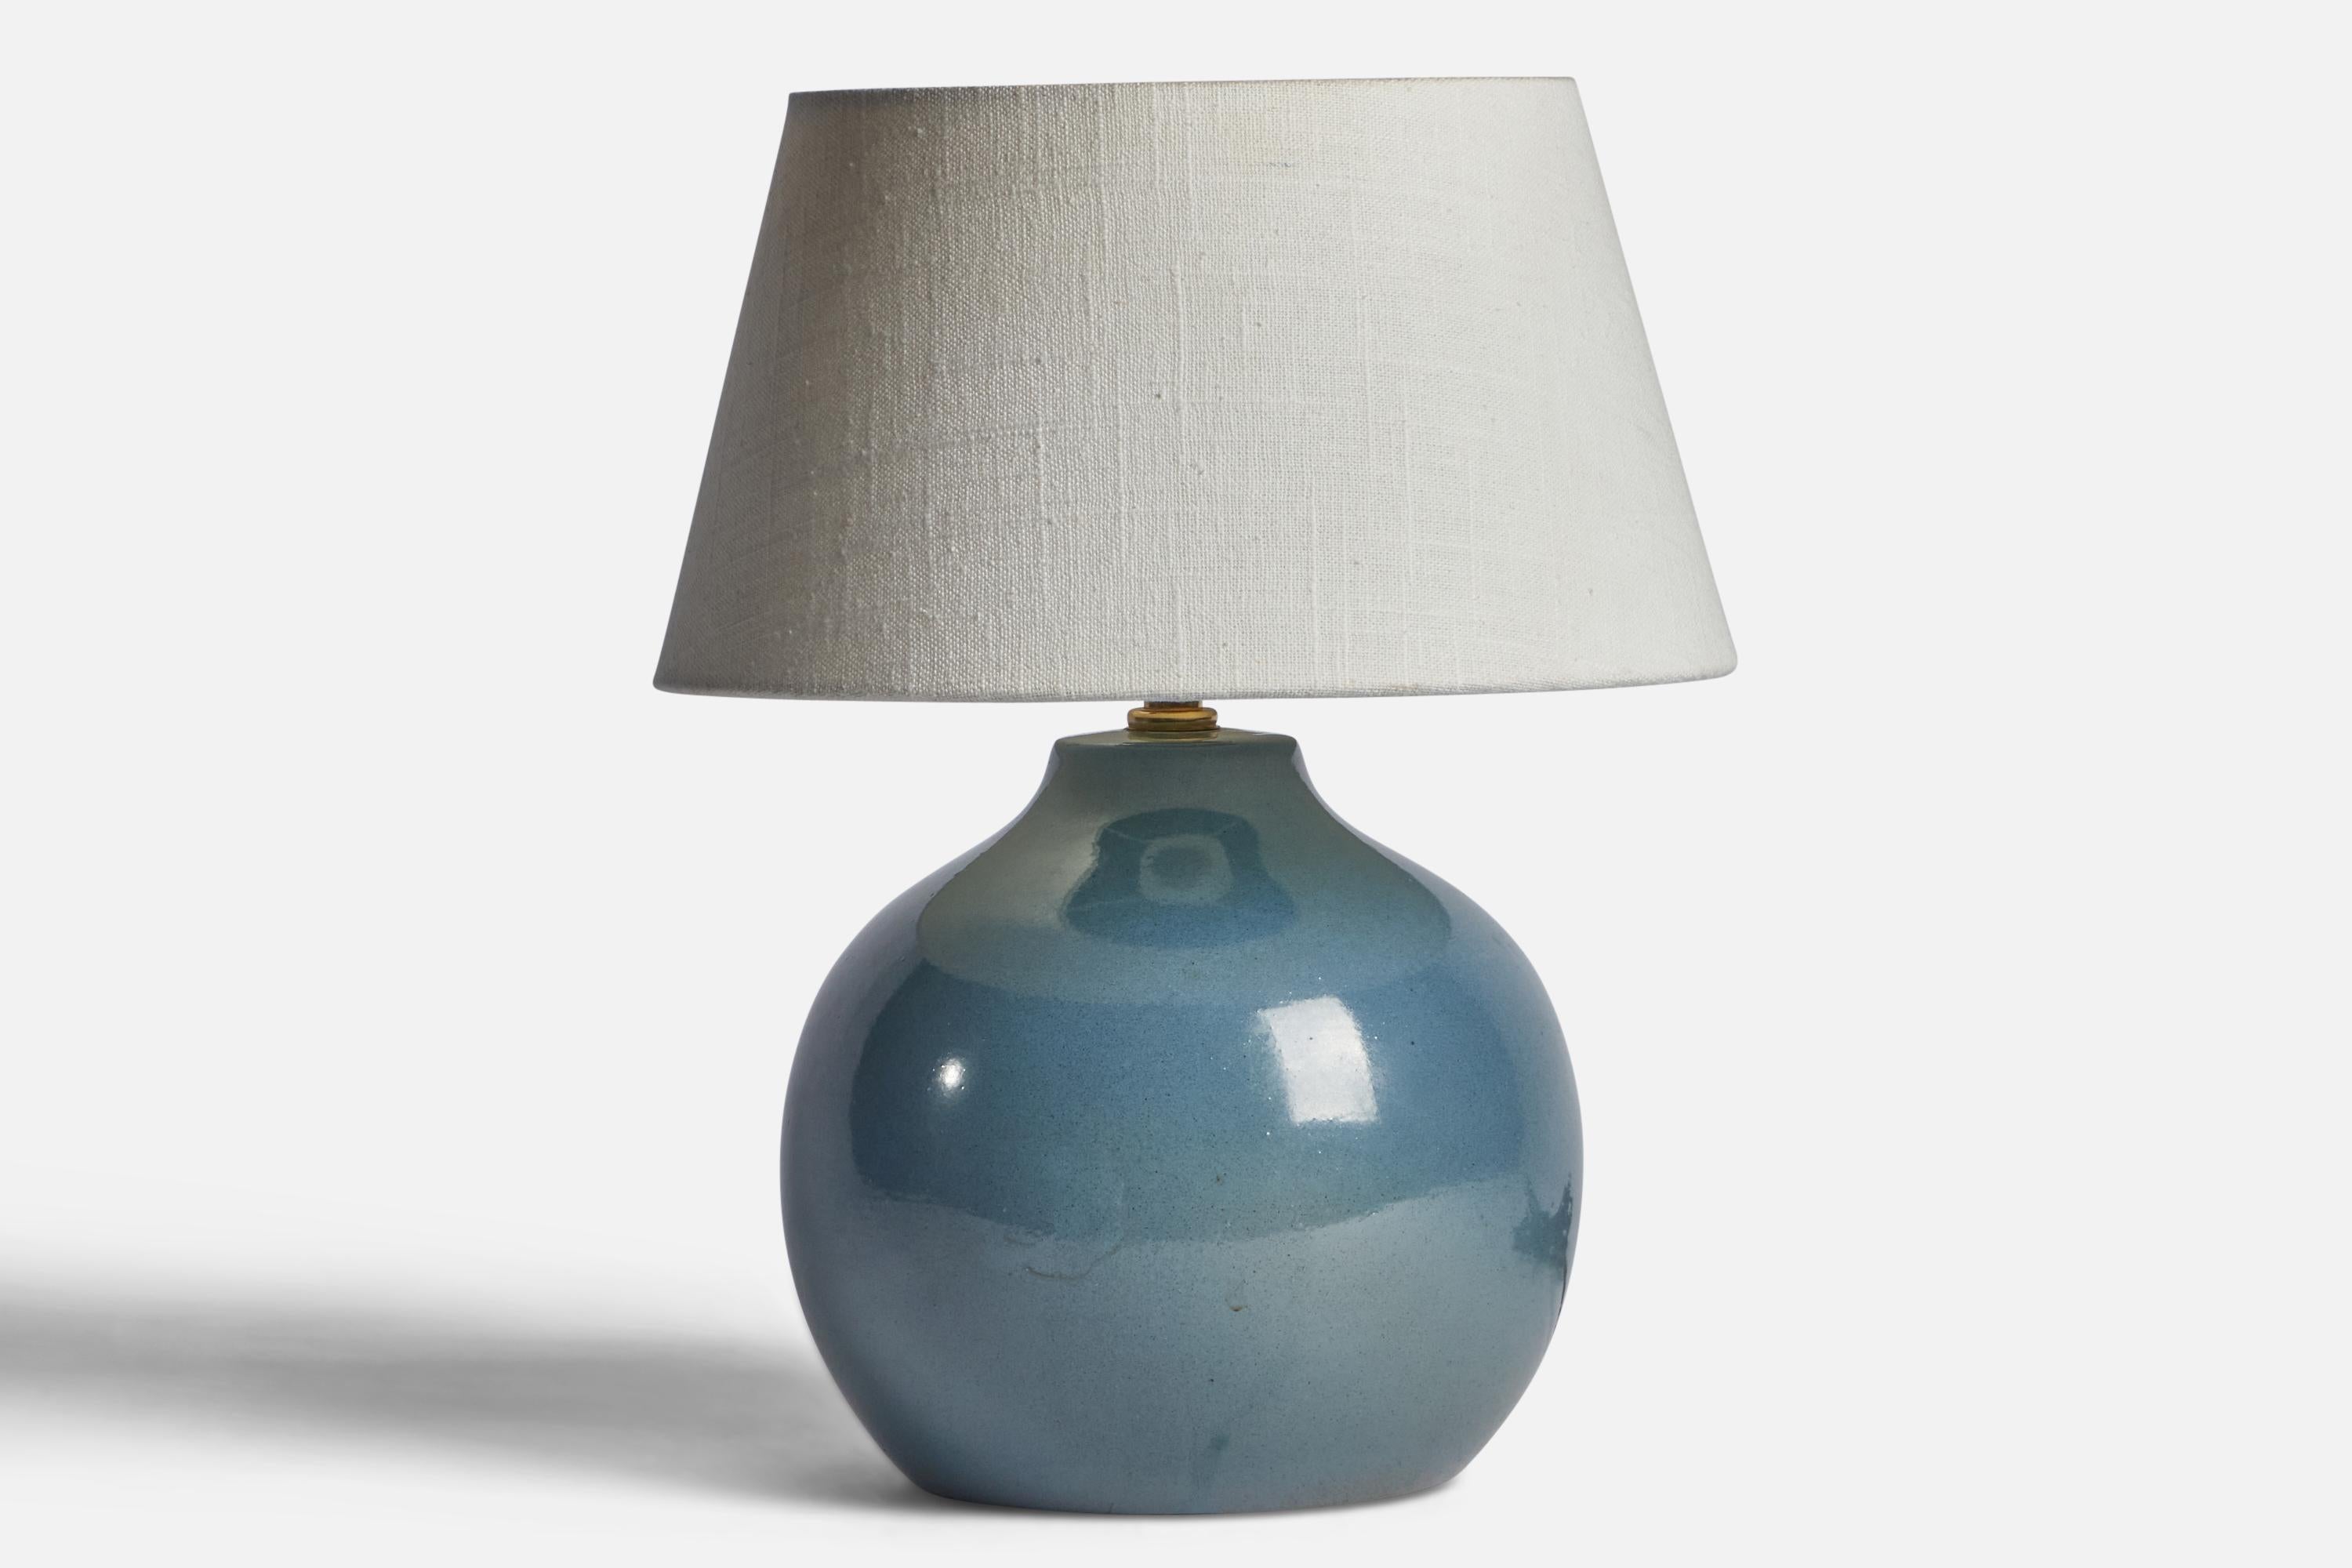 Lampe de table en céramique émaillée bleue conçue par Jane & Gordon Martz et produite par Marshall Studios, États-Unis, années 1960.

Dimensions de la lampe (pouces) : 9.85